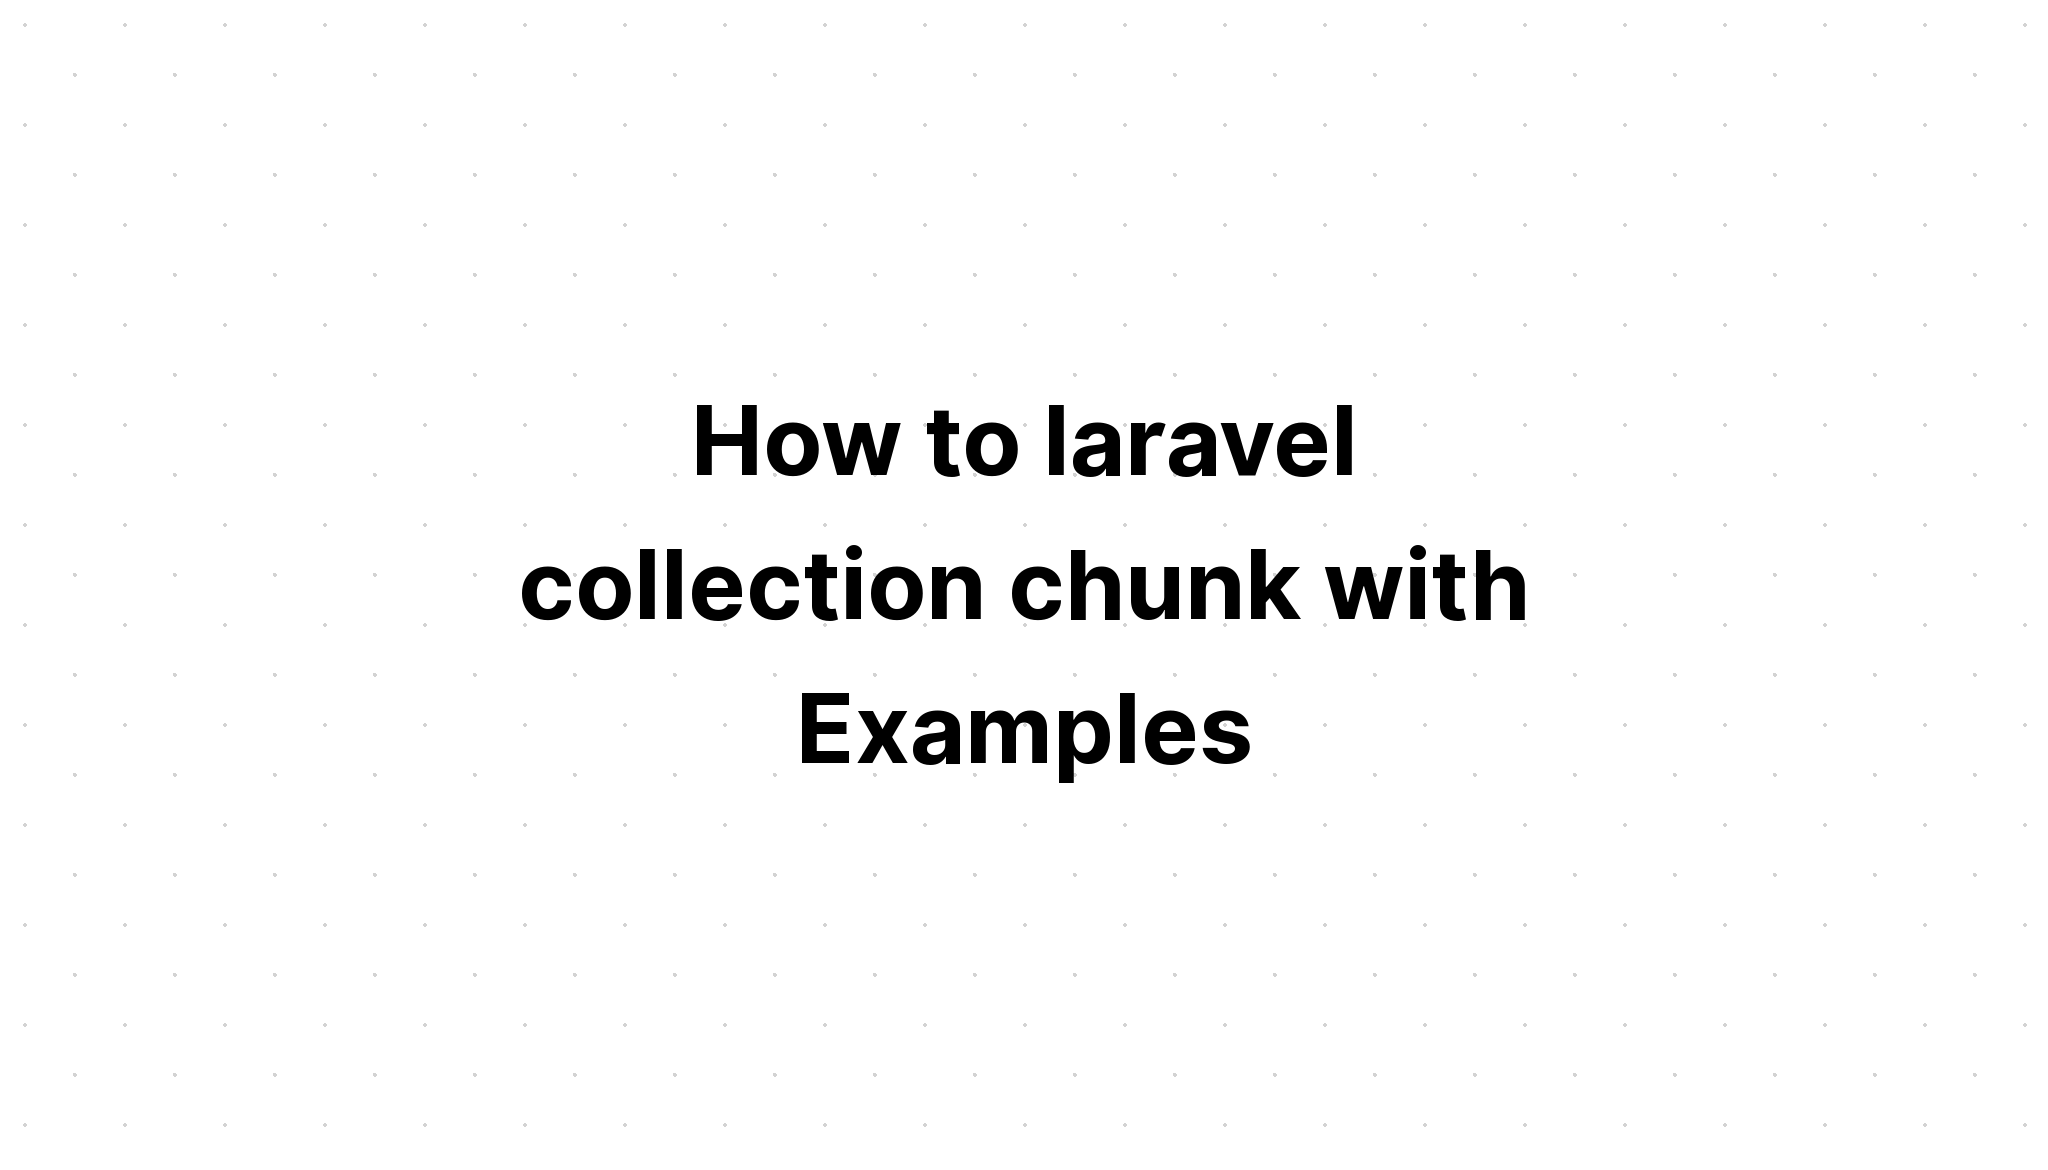 Cách tạo đoạn bộ sưu tập laravel với các ví dụ